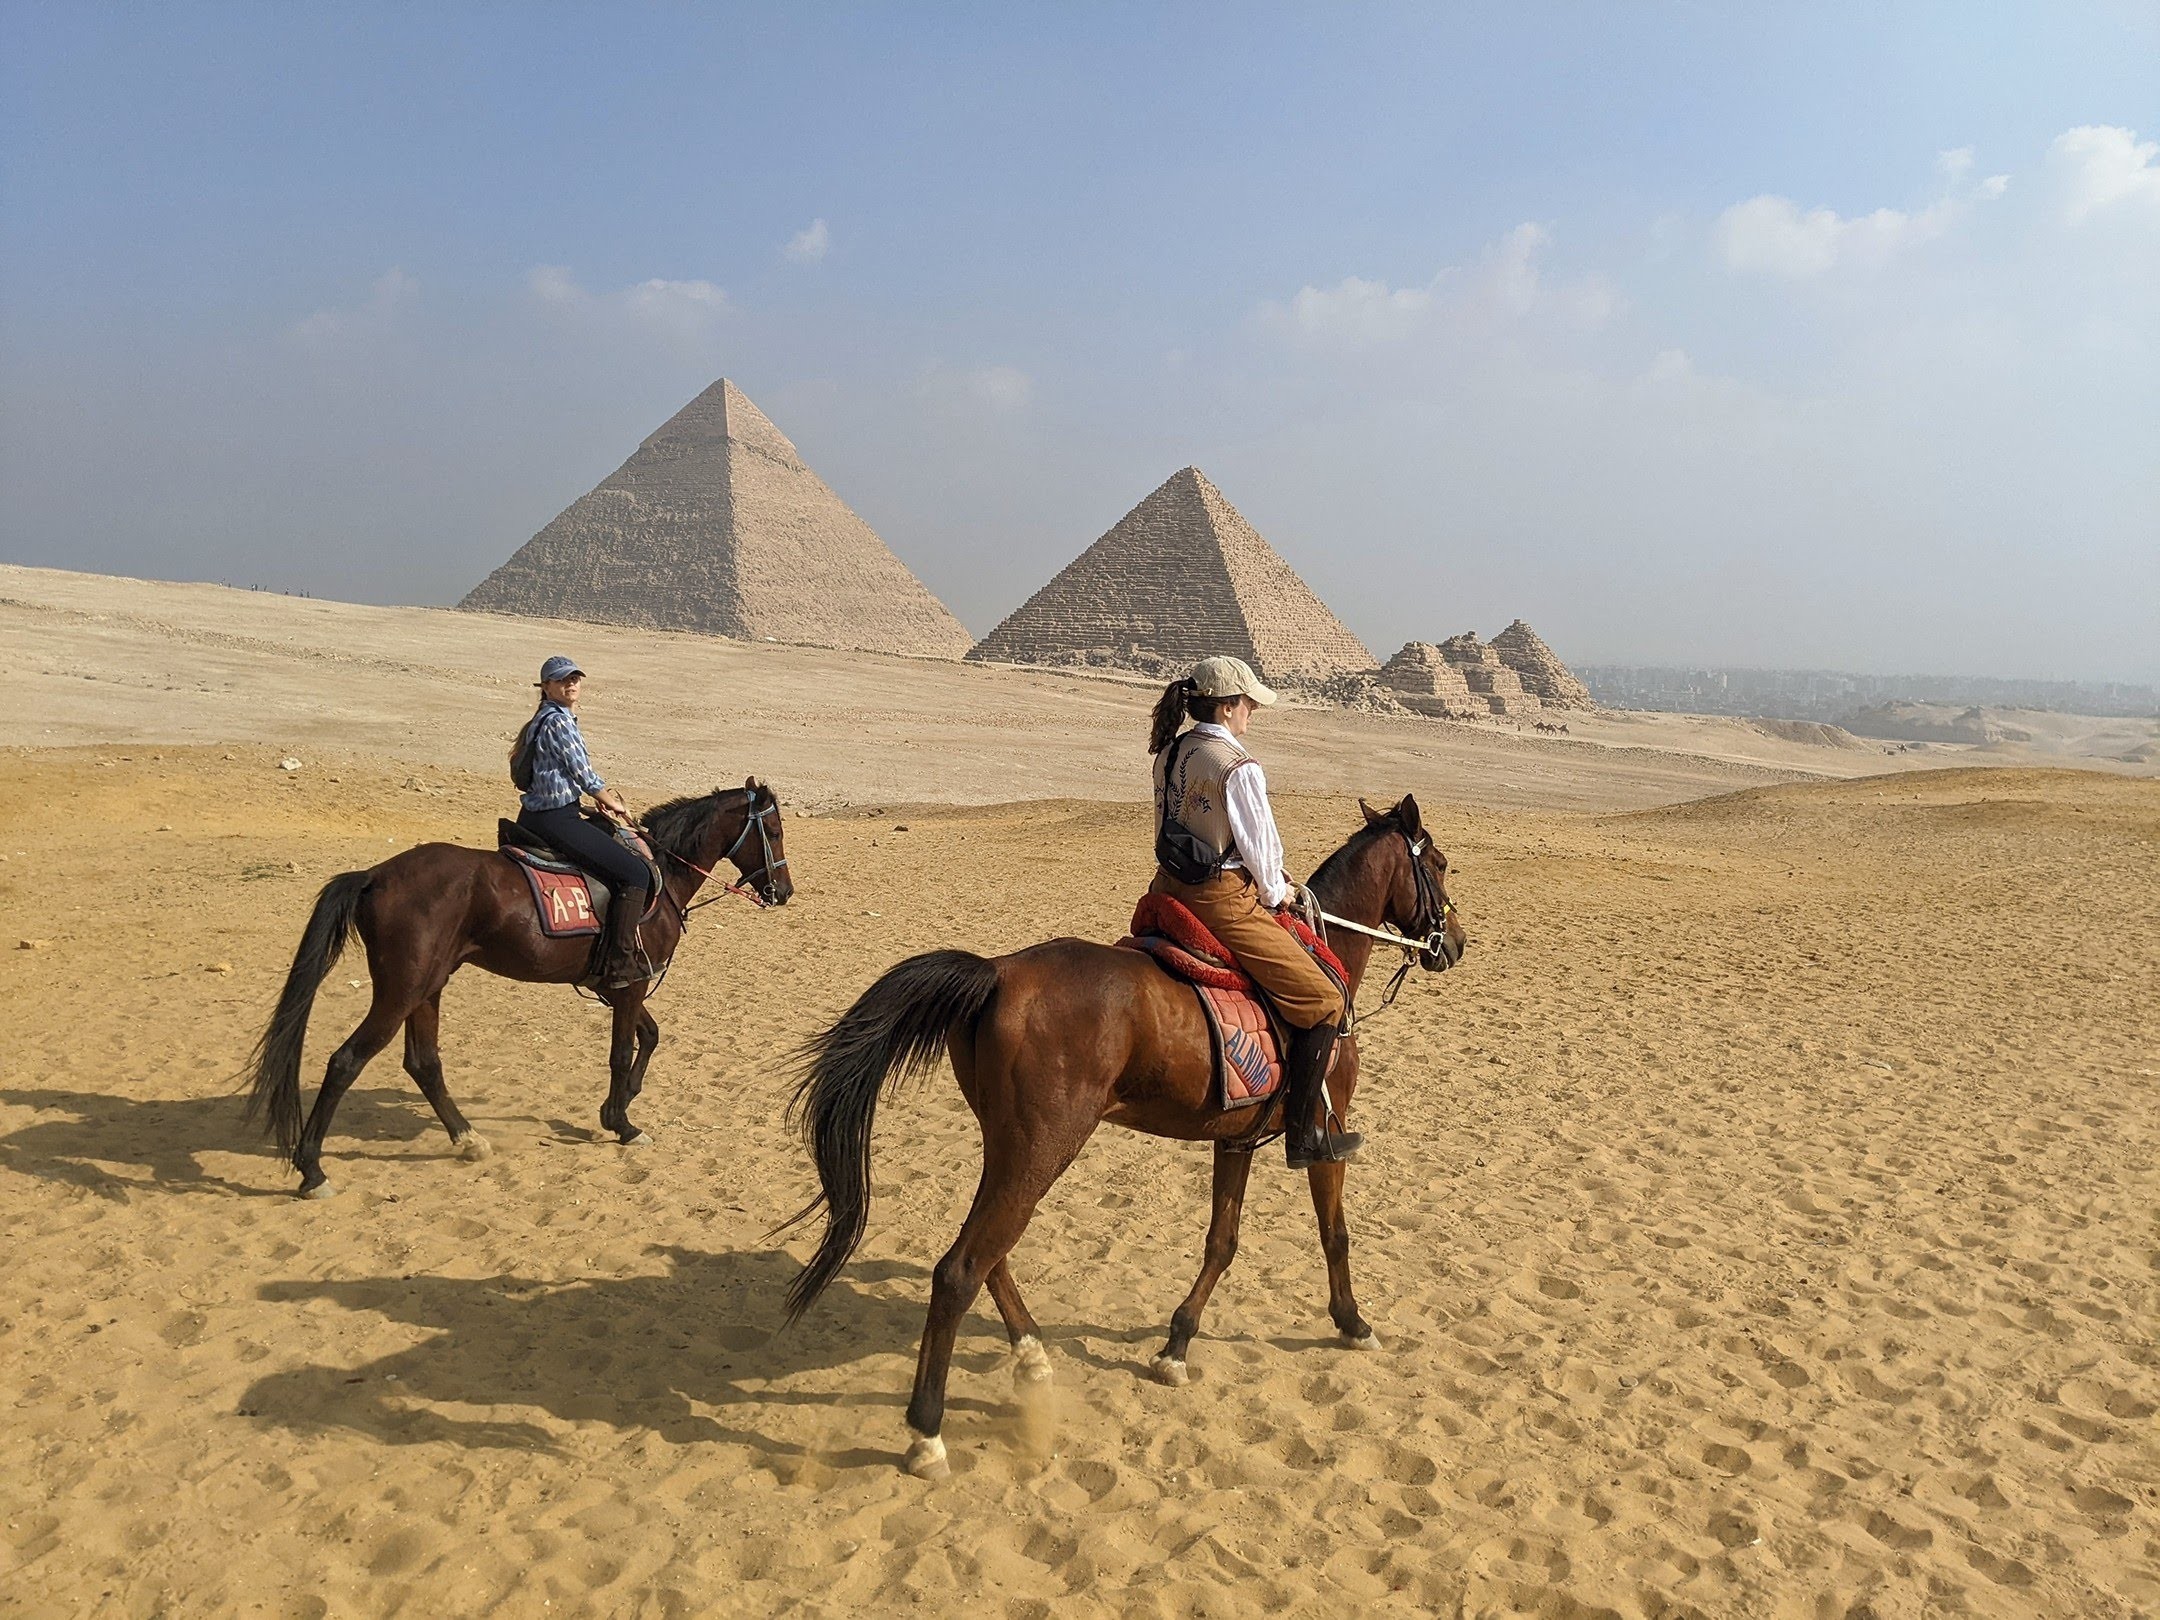 horse-riding-at-pyramids-of-giza-egypt-4399.jpg